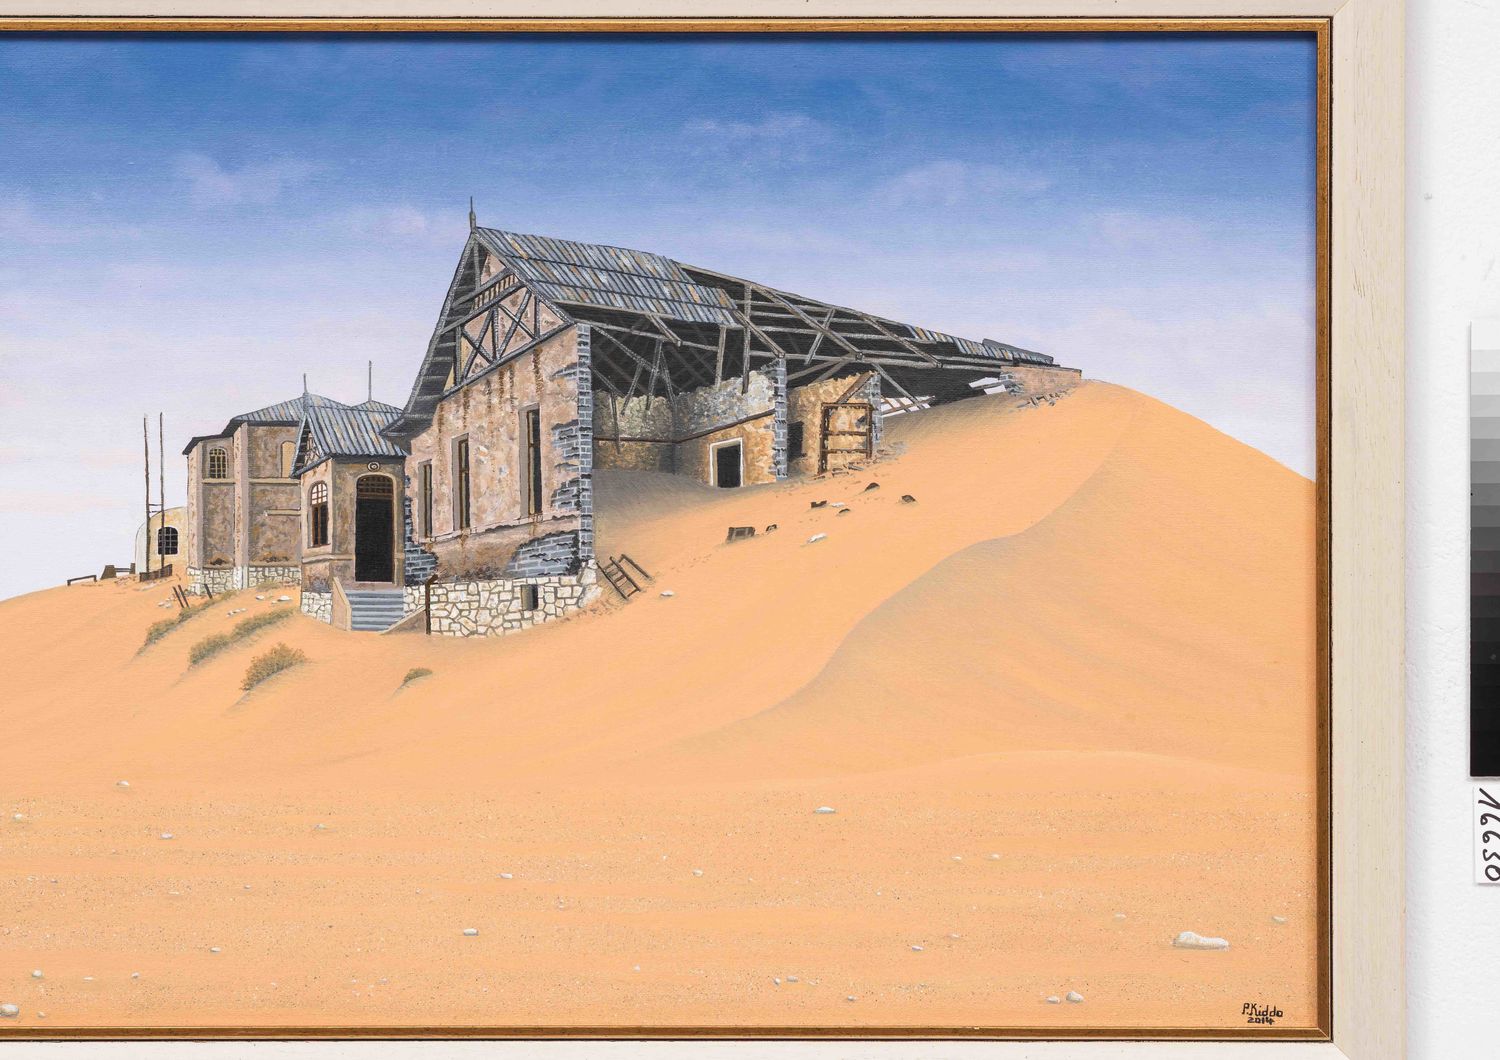 Paul Kiddo, Kolmanskop, 2014